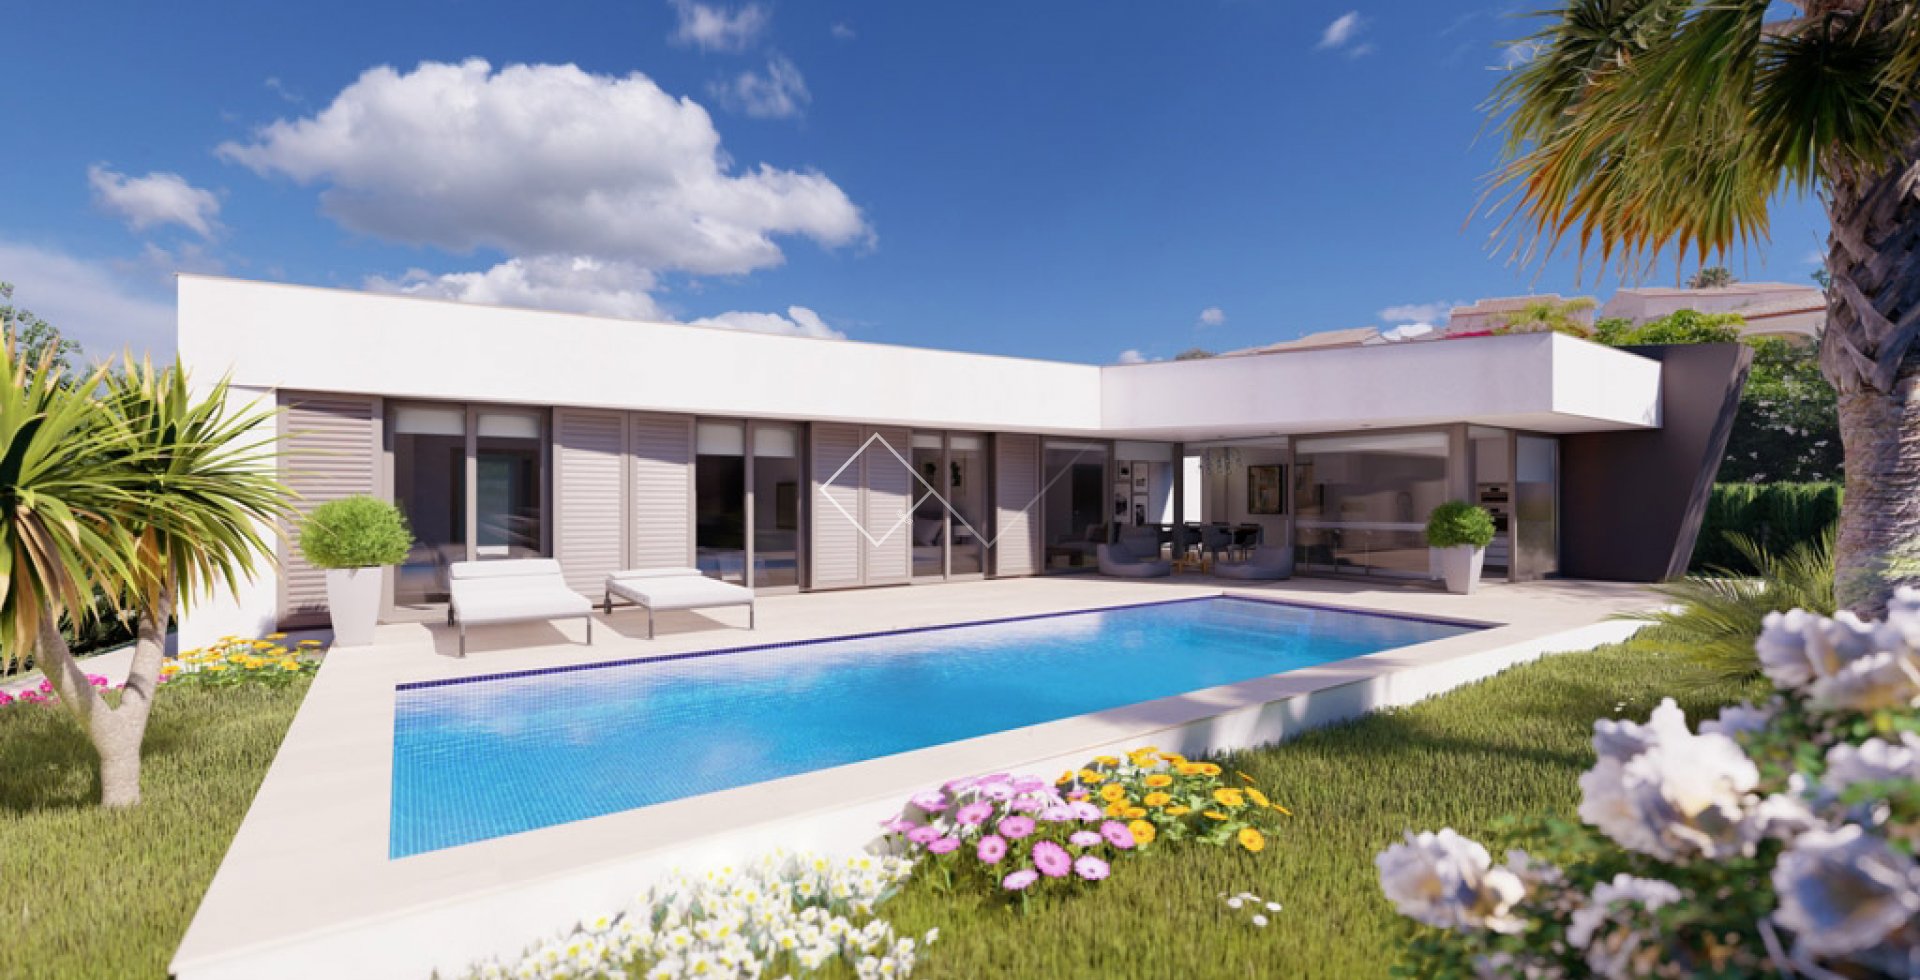 Villa de style Ibiza avec piscine - Projet de maison moderne à Gran Sol, Calpe